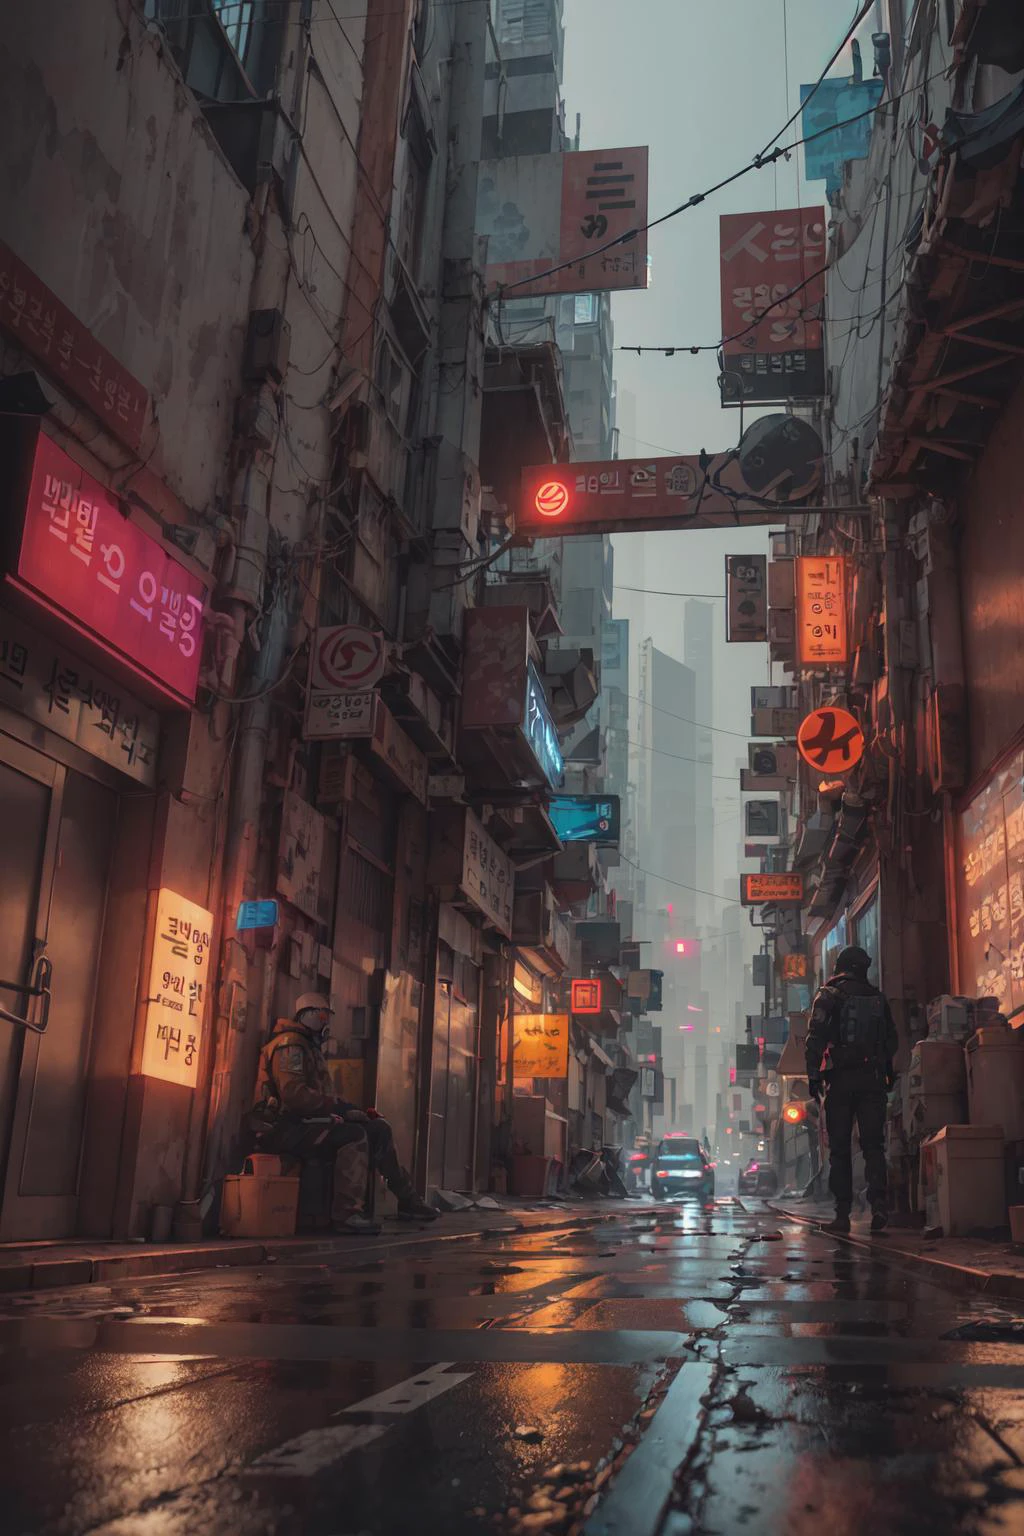  首爾盟友, 科幻電影中的賽博龐克城市, 空蕩蕩的街道, 韓國人, 韓國人 signs, 錯綜複雜, 超詳細, 實際的, ultra-實際的, 高品質, 超細節, 瘋狂的細節, 照片寫實主義, 8K